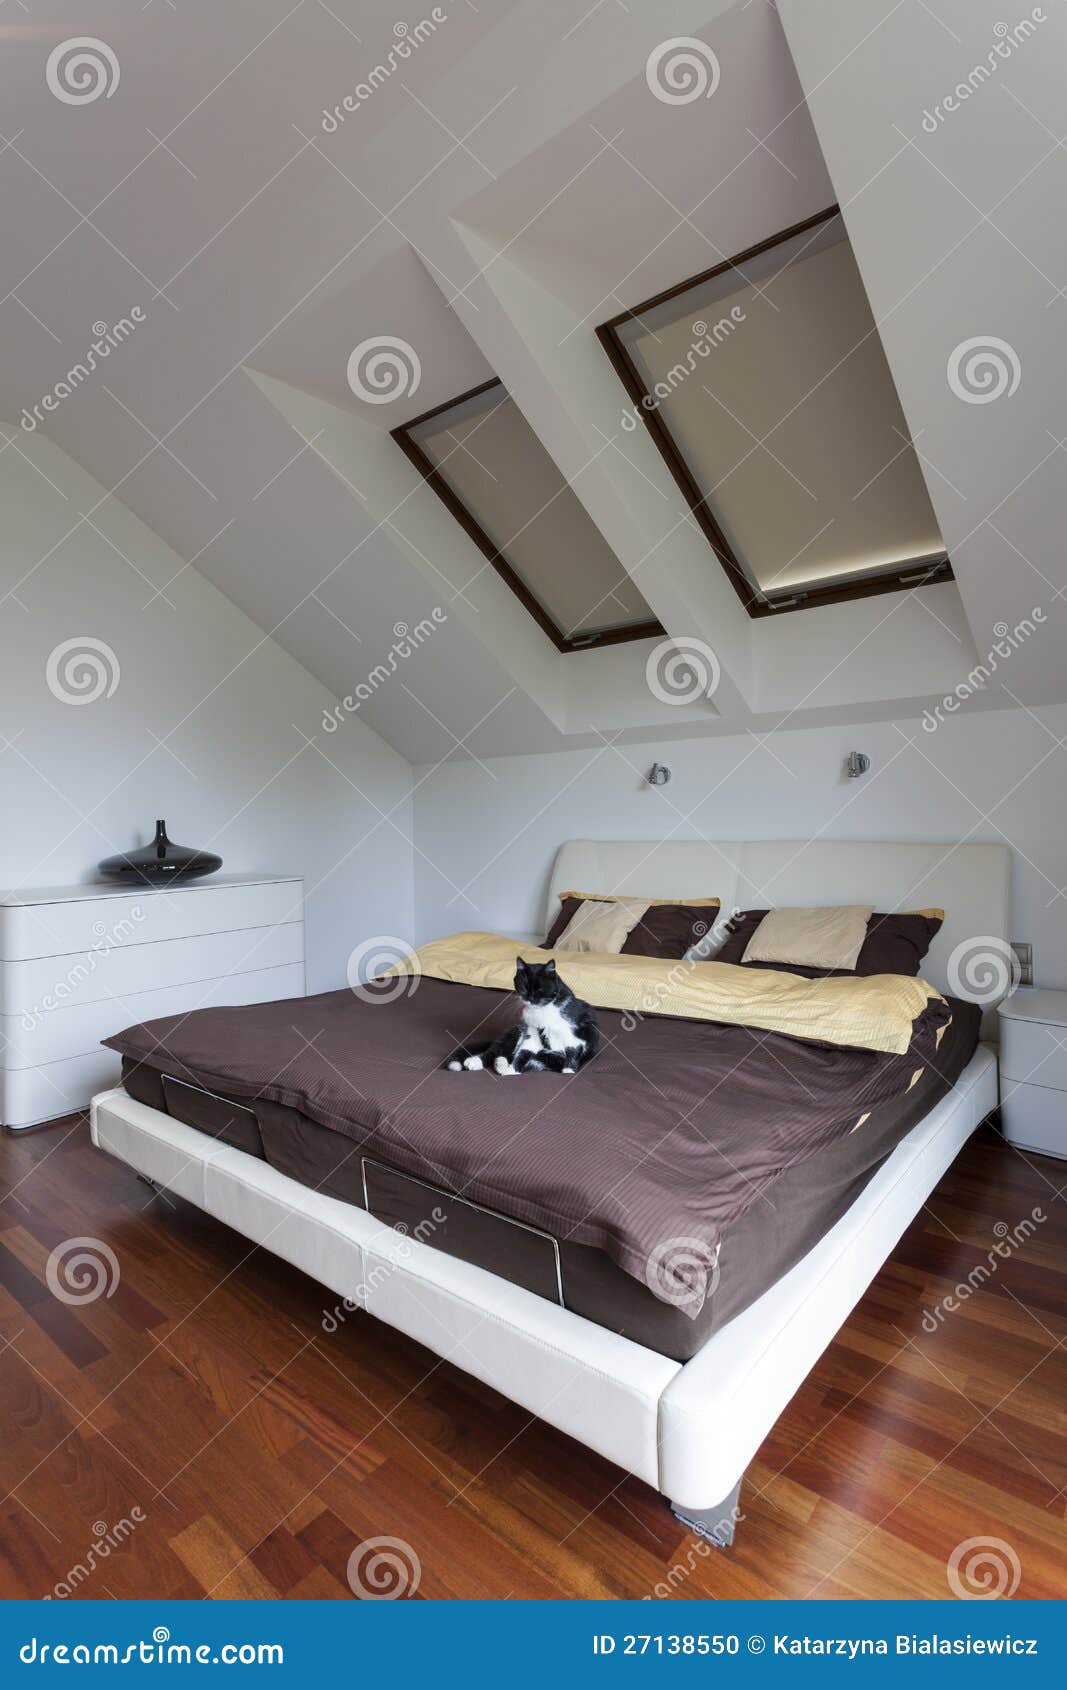 cat in bedroom